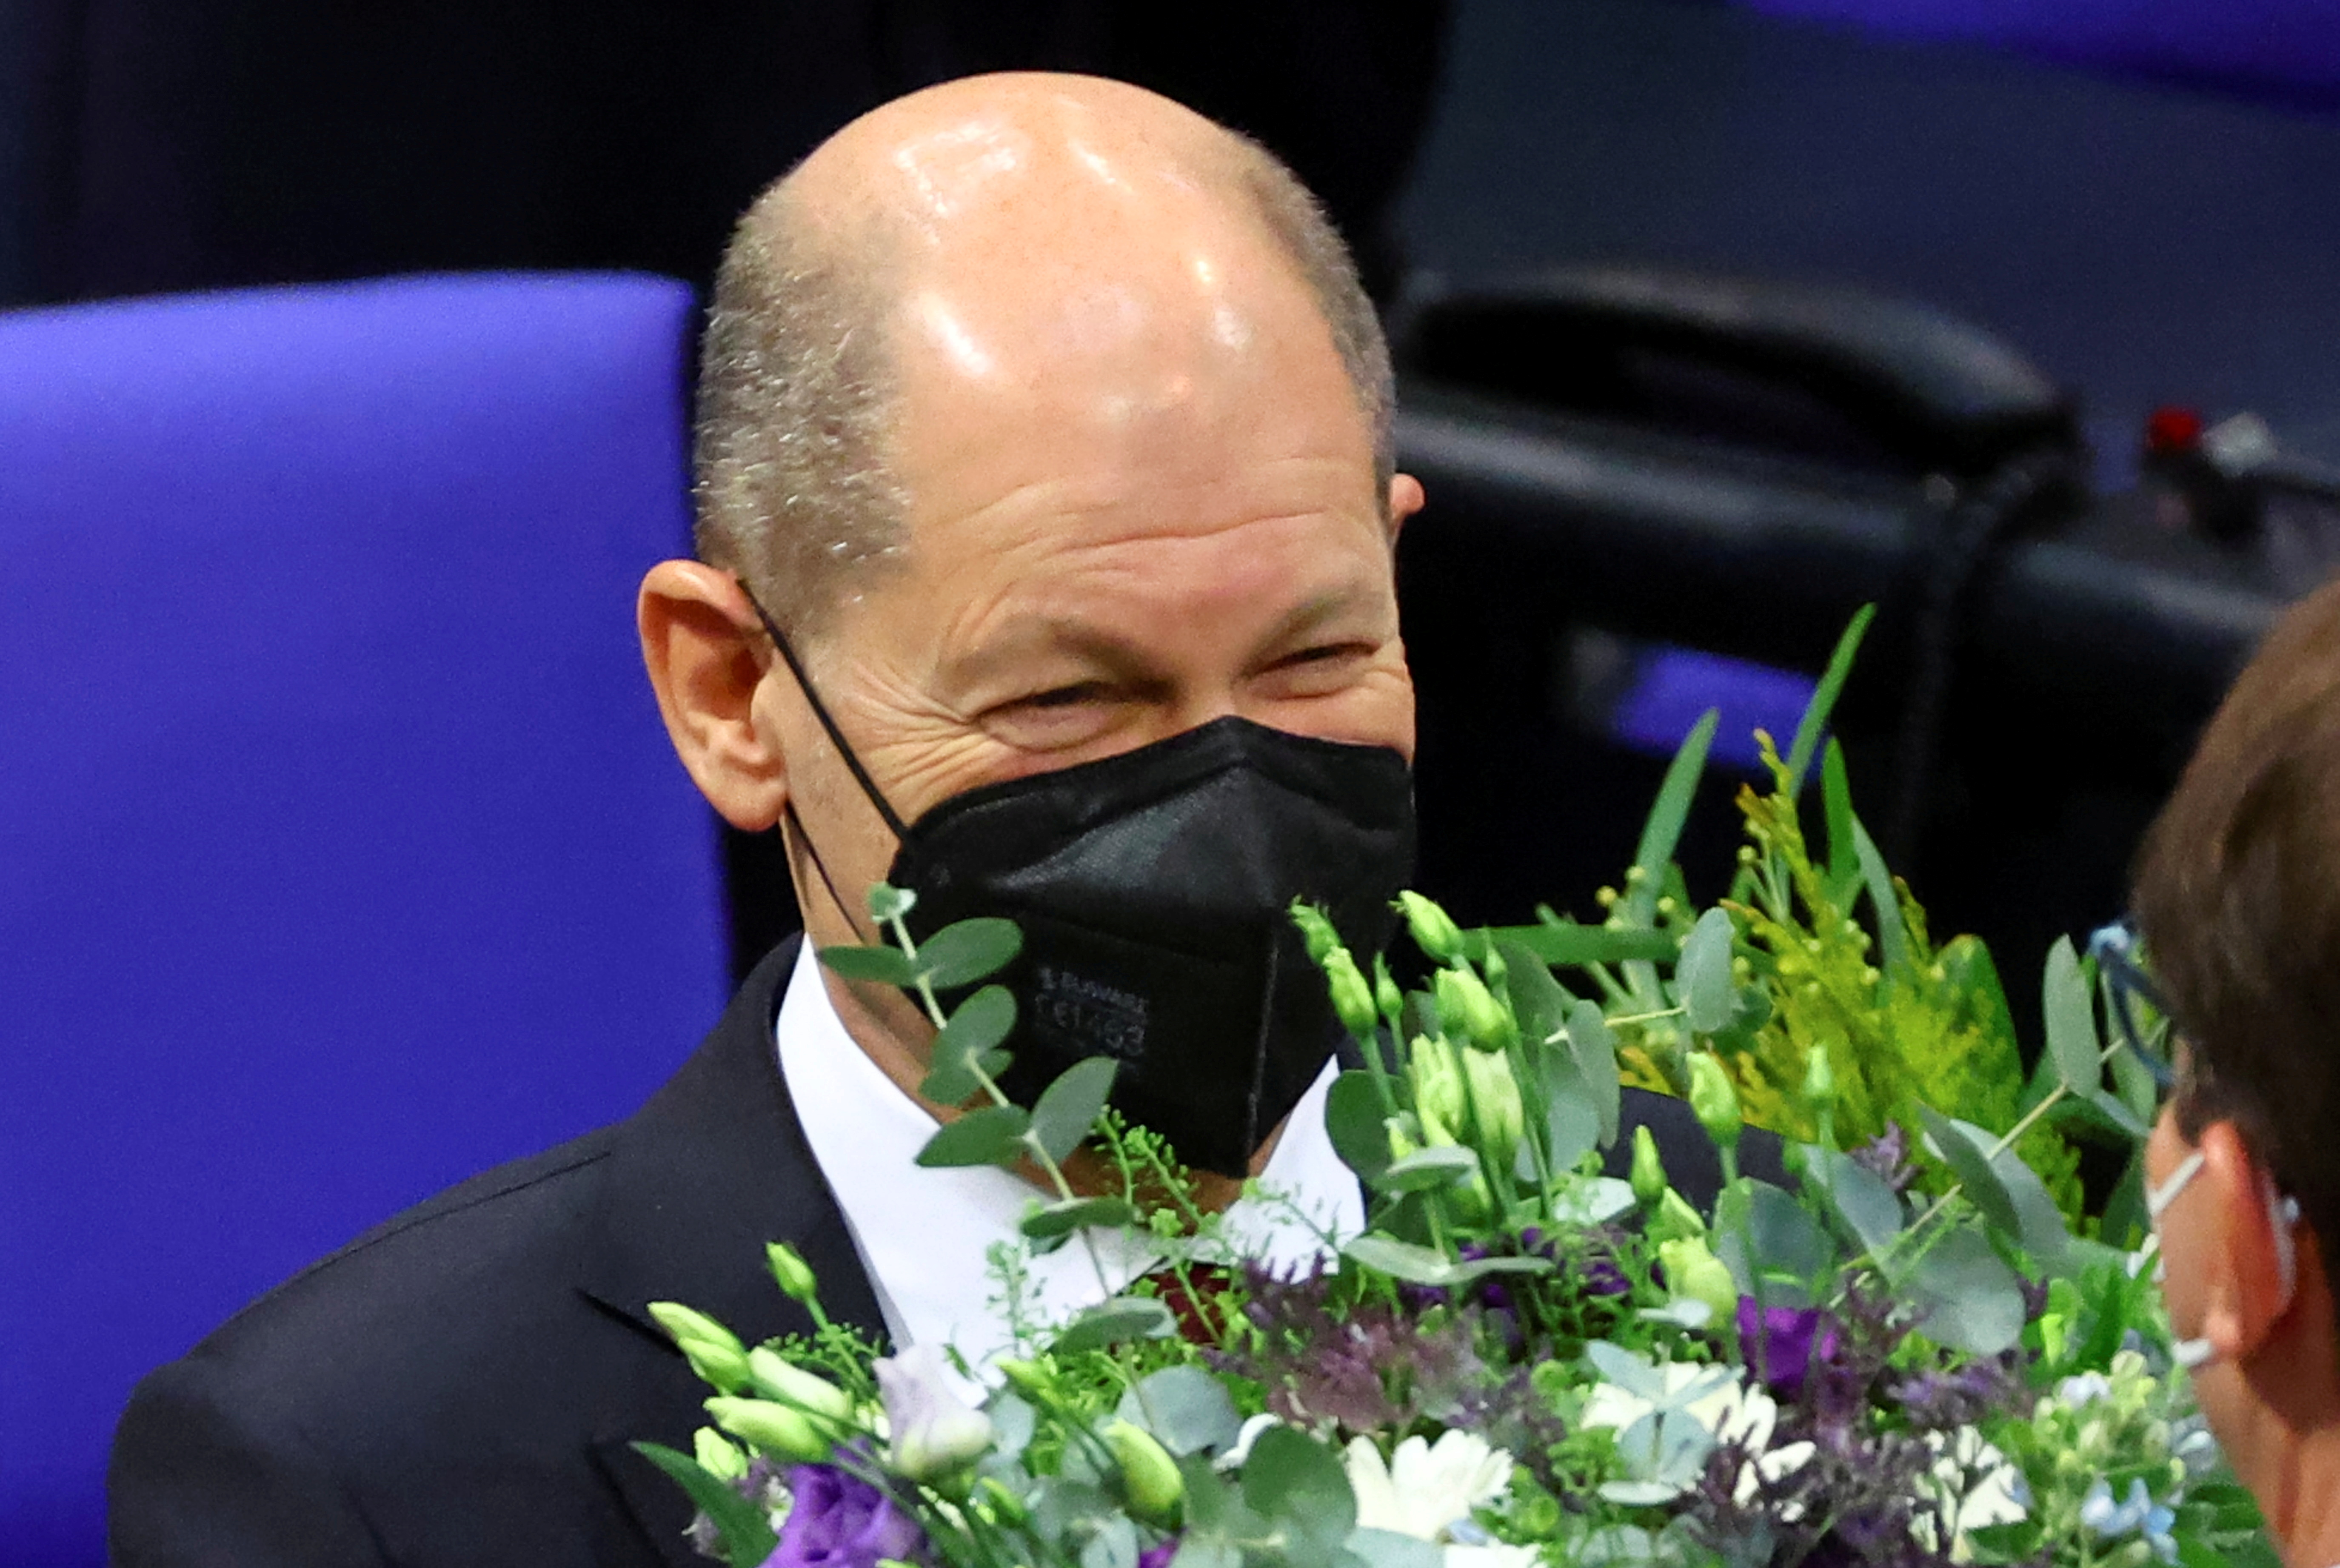 Scholz recibe flores tras la sesión del Parlamento alemán que lo eligió canciller. (REUTERS/Fabrizio Bensch)